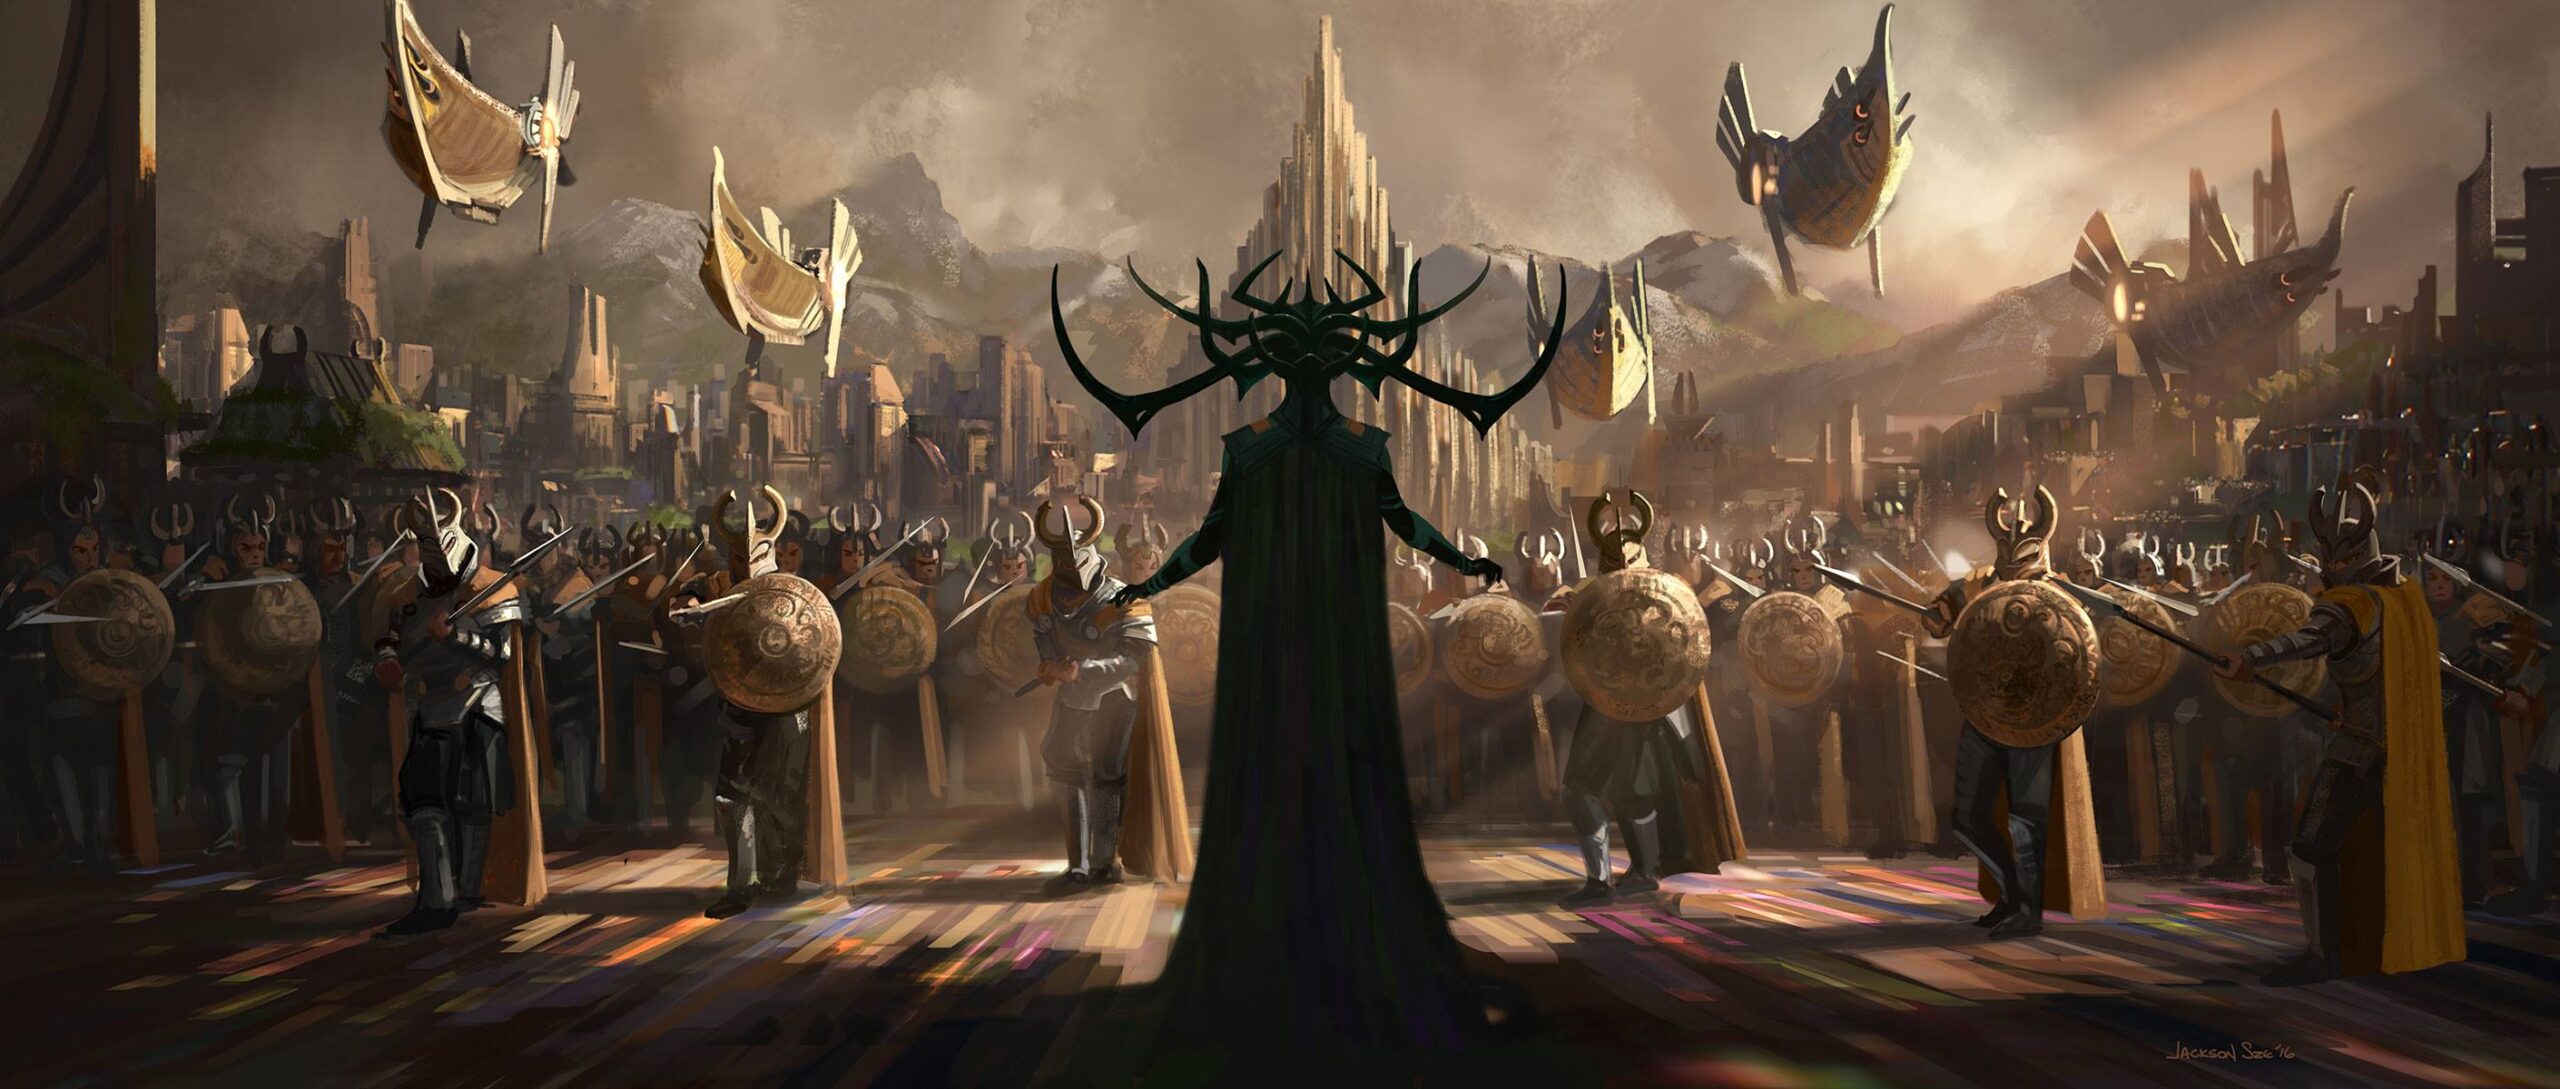 Thor e Hulk em destaque em nova imagem de “Thor: Ragnarok”